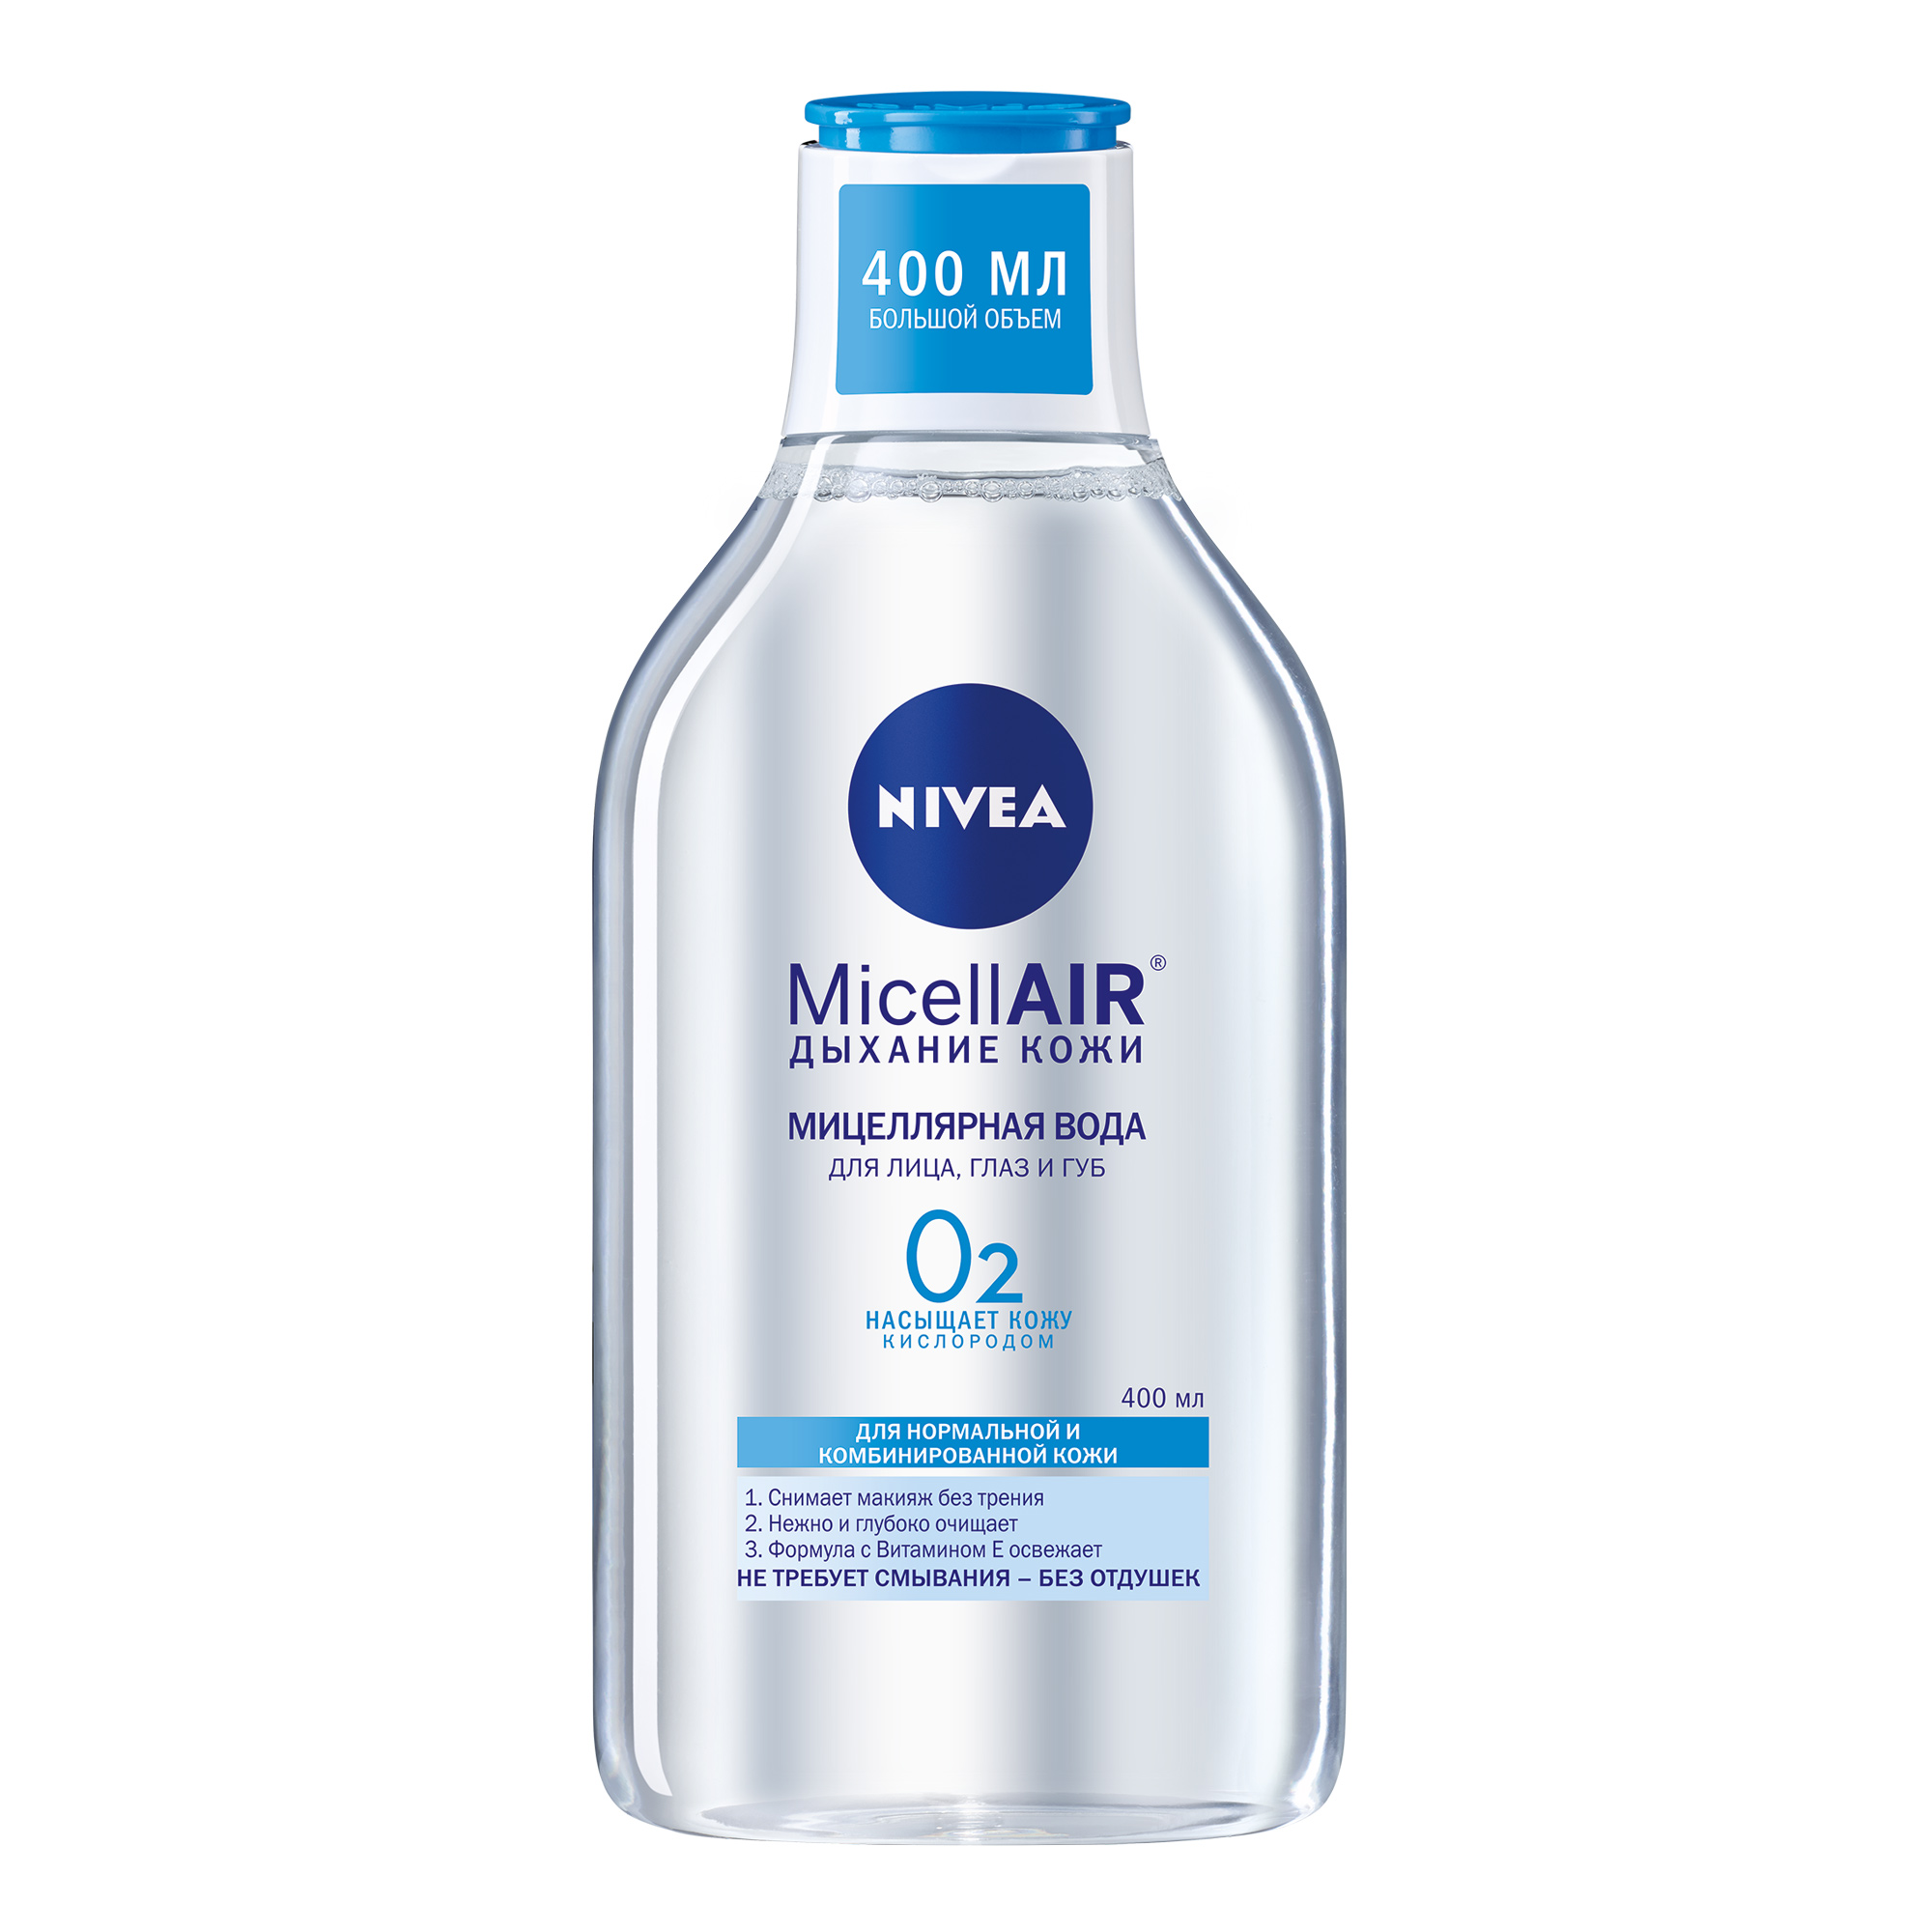 Мицеллярная вода Nivea MicellAIR Дыхание кожи для нормальной и комбинированной кожи 400 мл средство для снятия стойкого макияжа с глаз nivea make up expert 125 мл